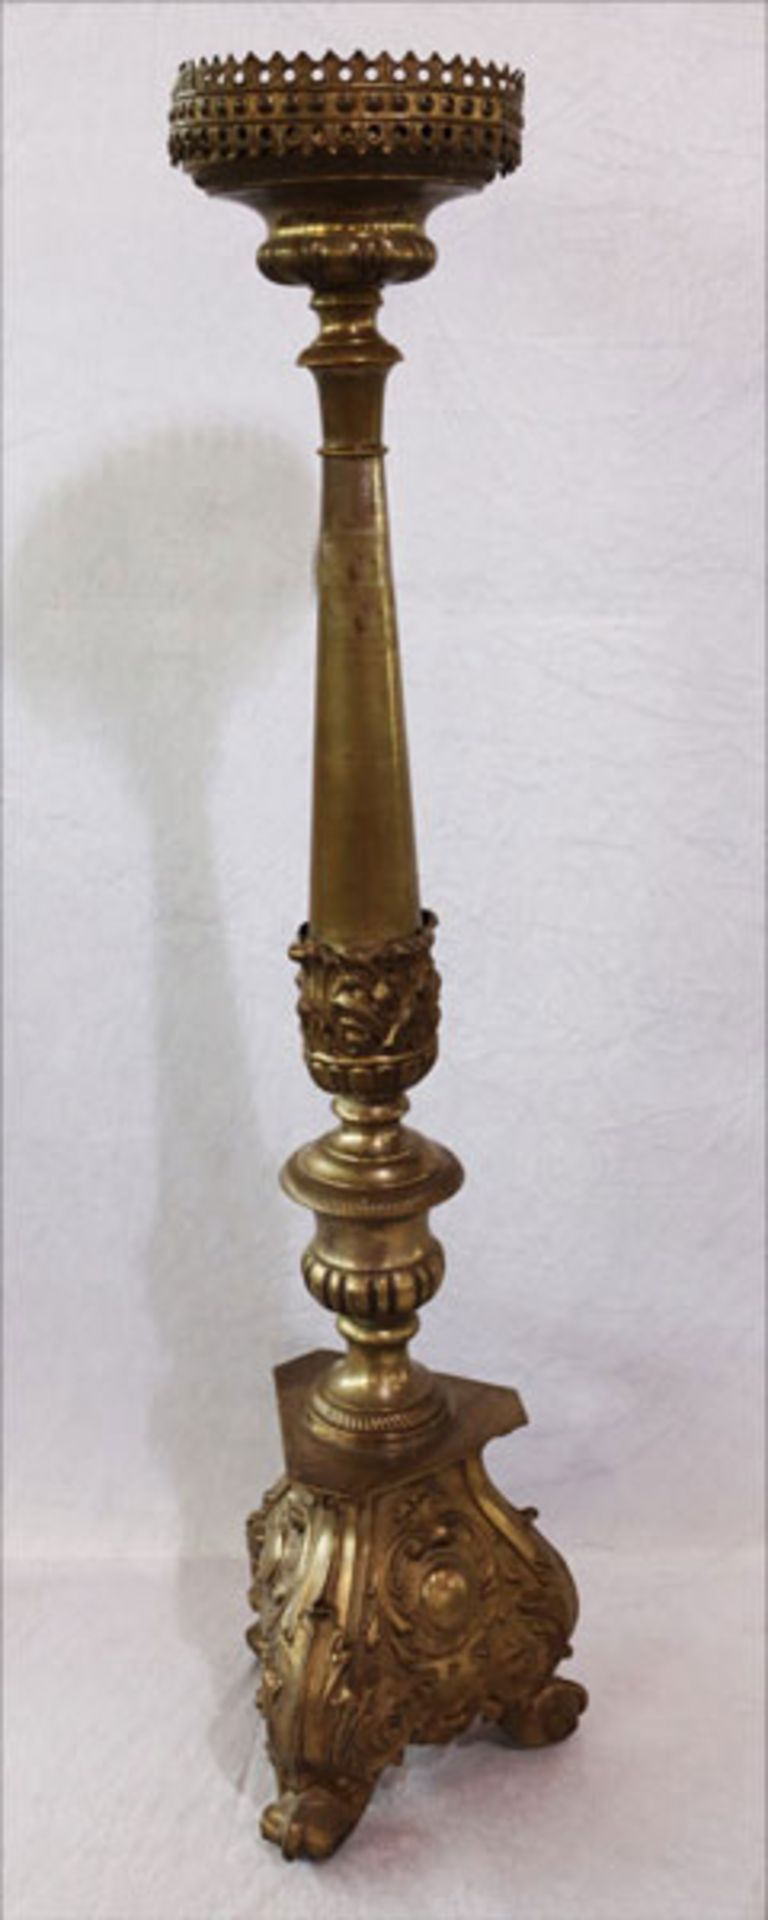 Metall Kerzenleuchter mit reliefierten Verzierungen, H 102 cm, Alter- und Gebrauchsspuren, berieben